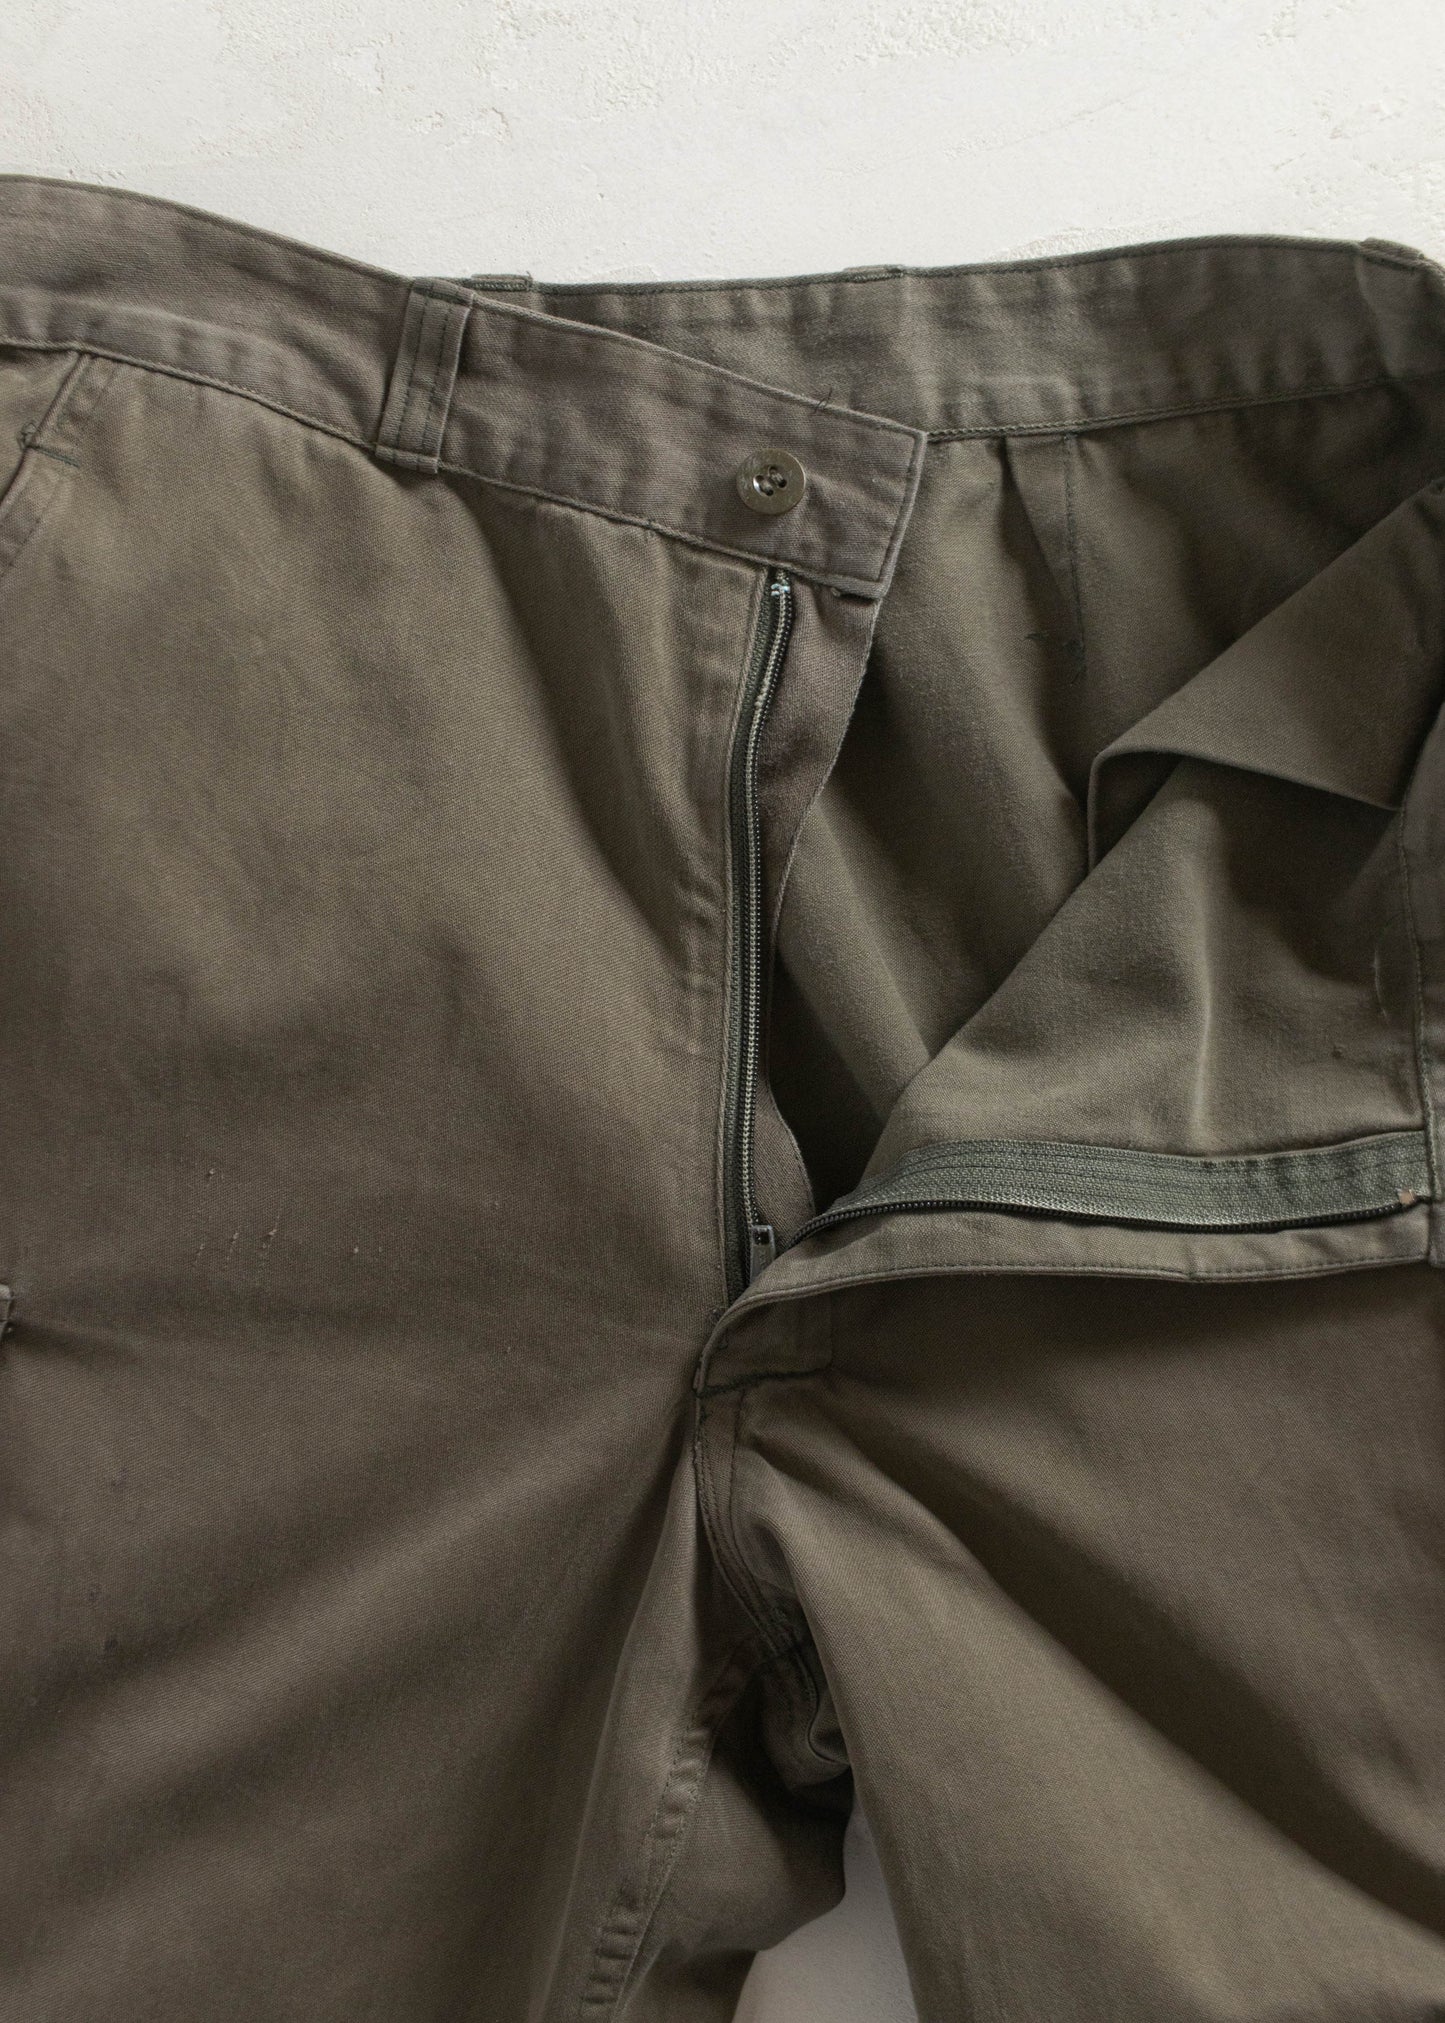 Vintage 1980s Paul Boyé French Military Cargo Pants Size Women's 30 Men's 32